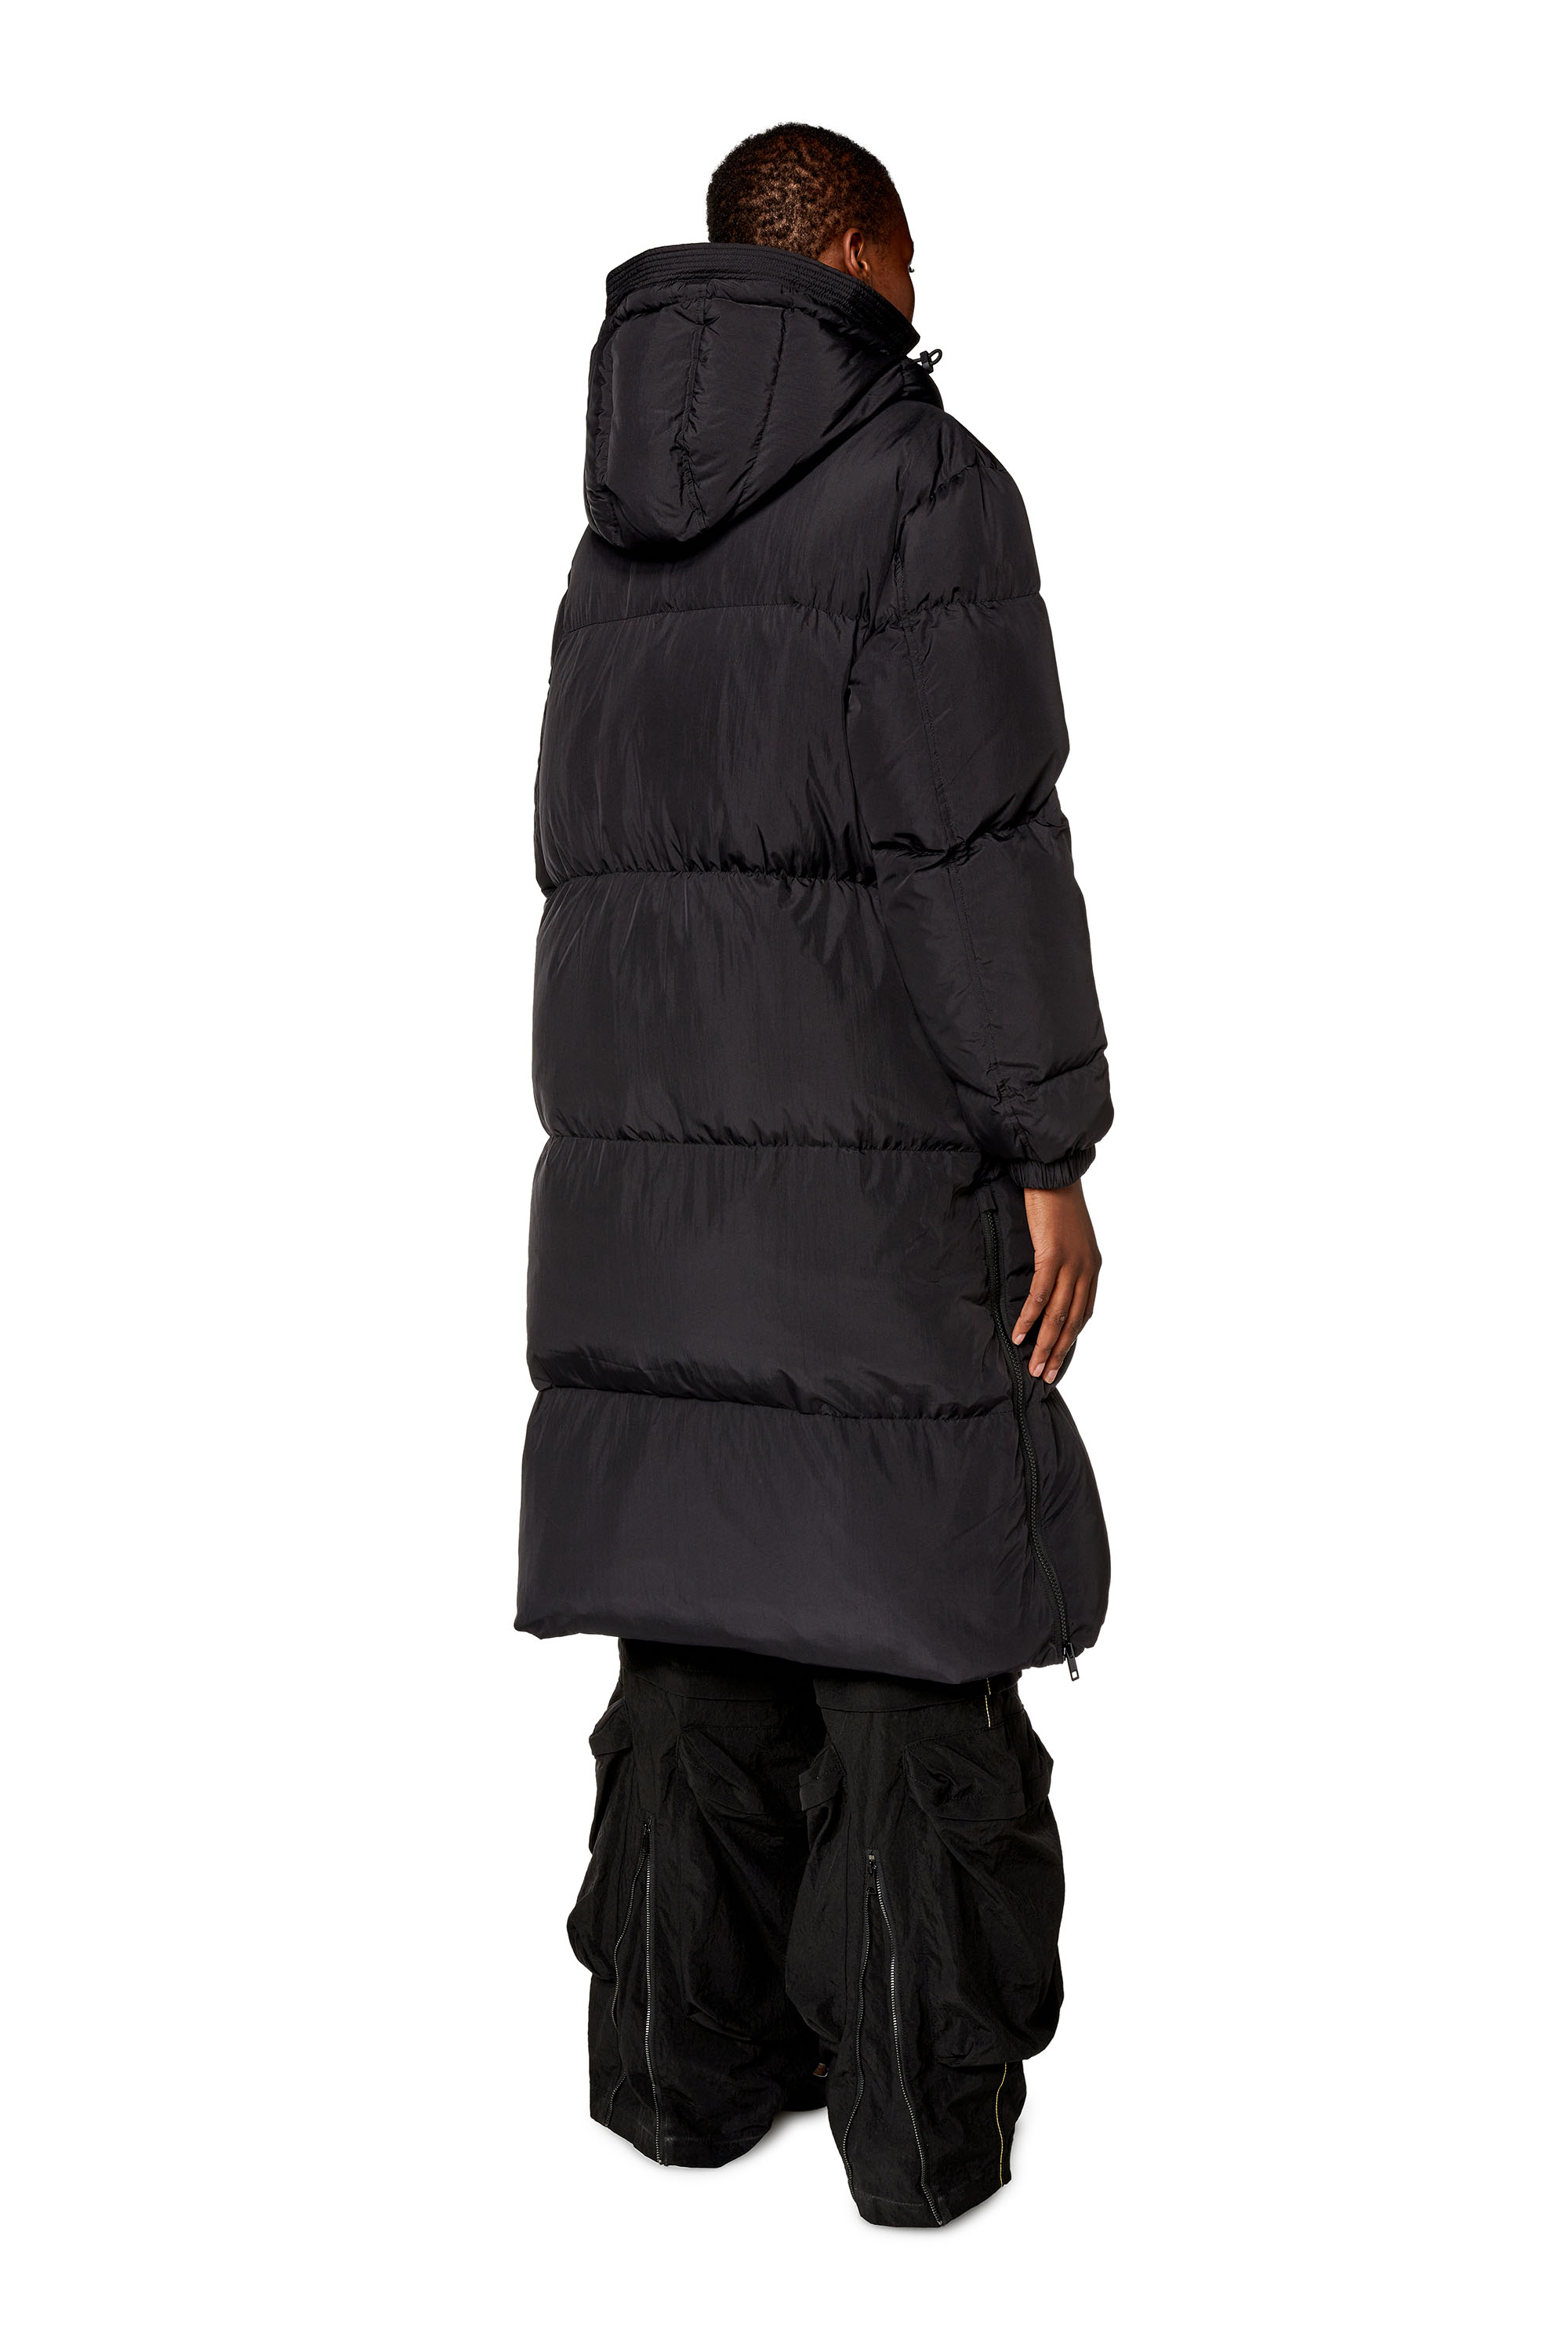 Diesel - W-PEYT, Woman Down coat in recycled nylon taslan in Black - Image 3